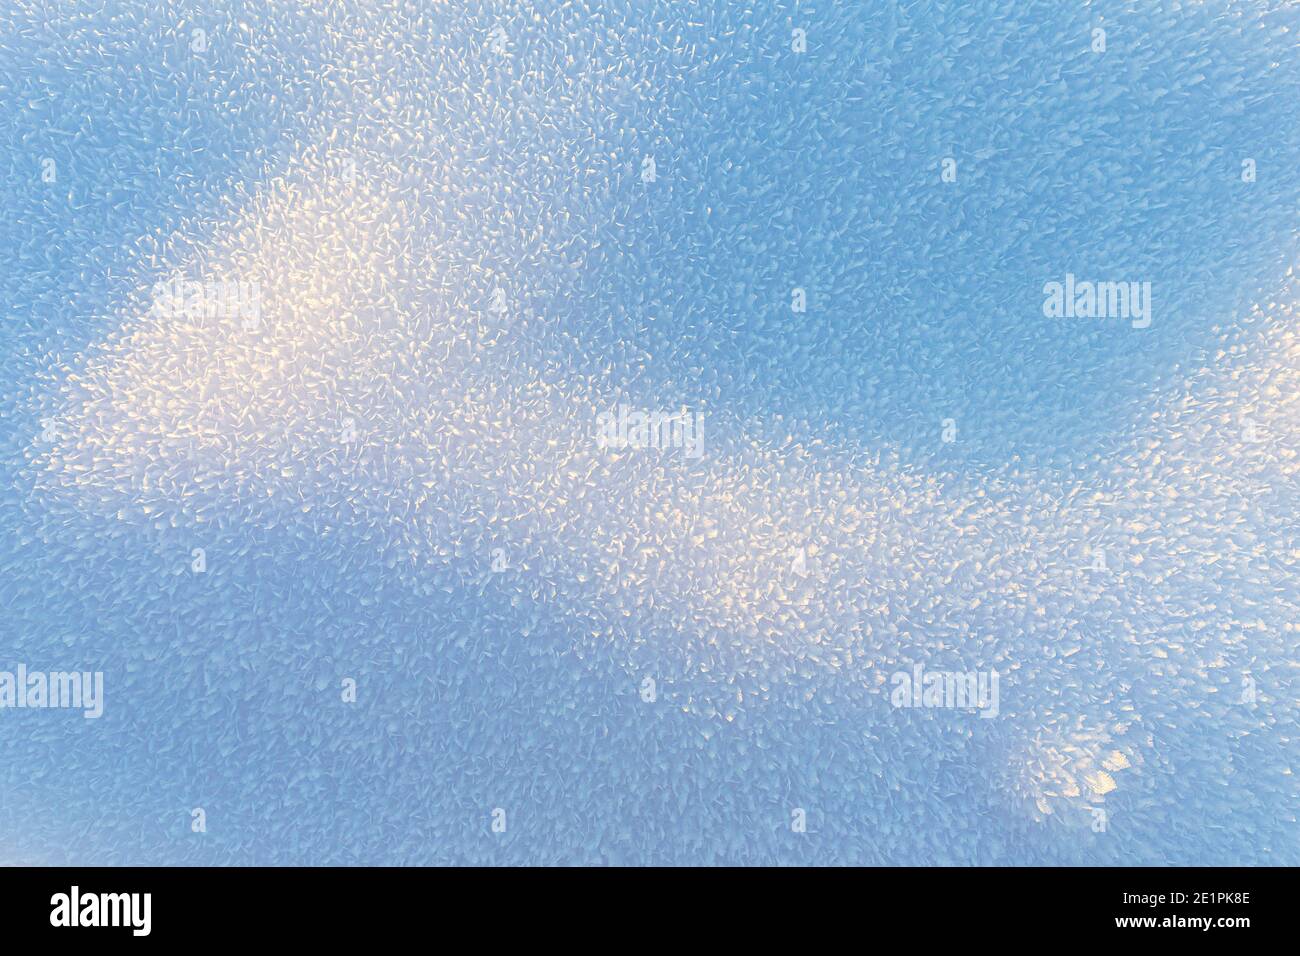 Magnifique gradient, fond naturel d'hiver de glace et de cristaux de neige illuminés par le soleil. Banque D'Images